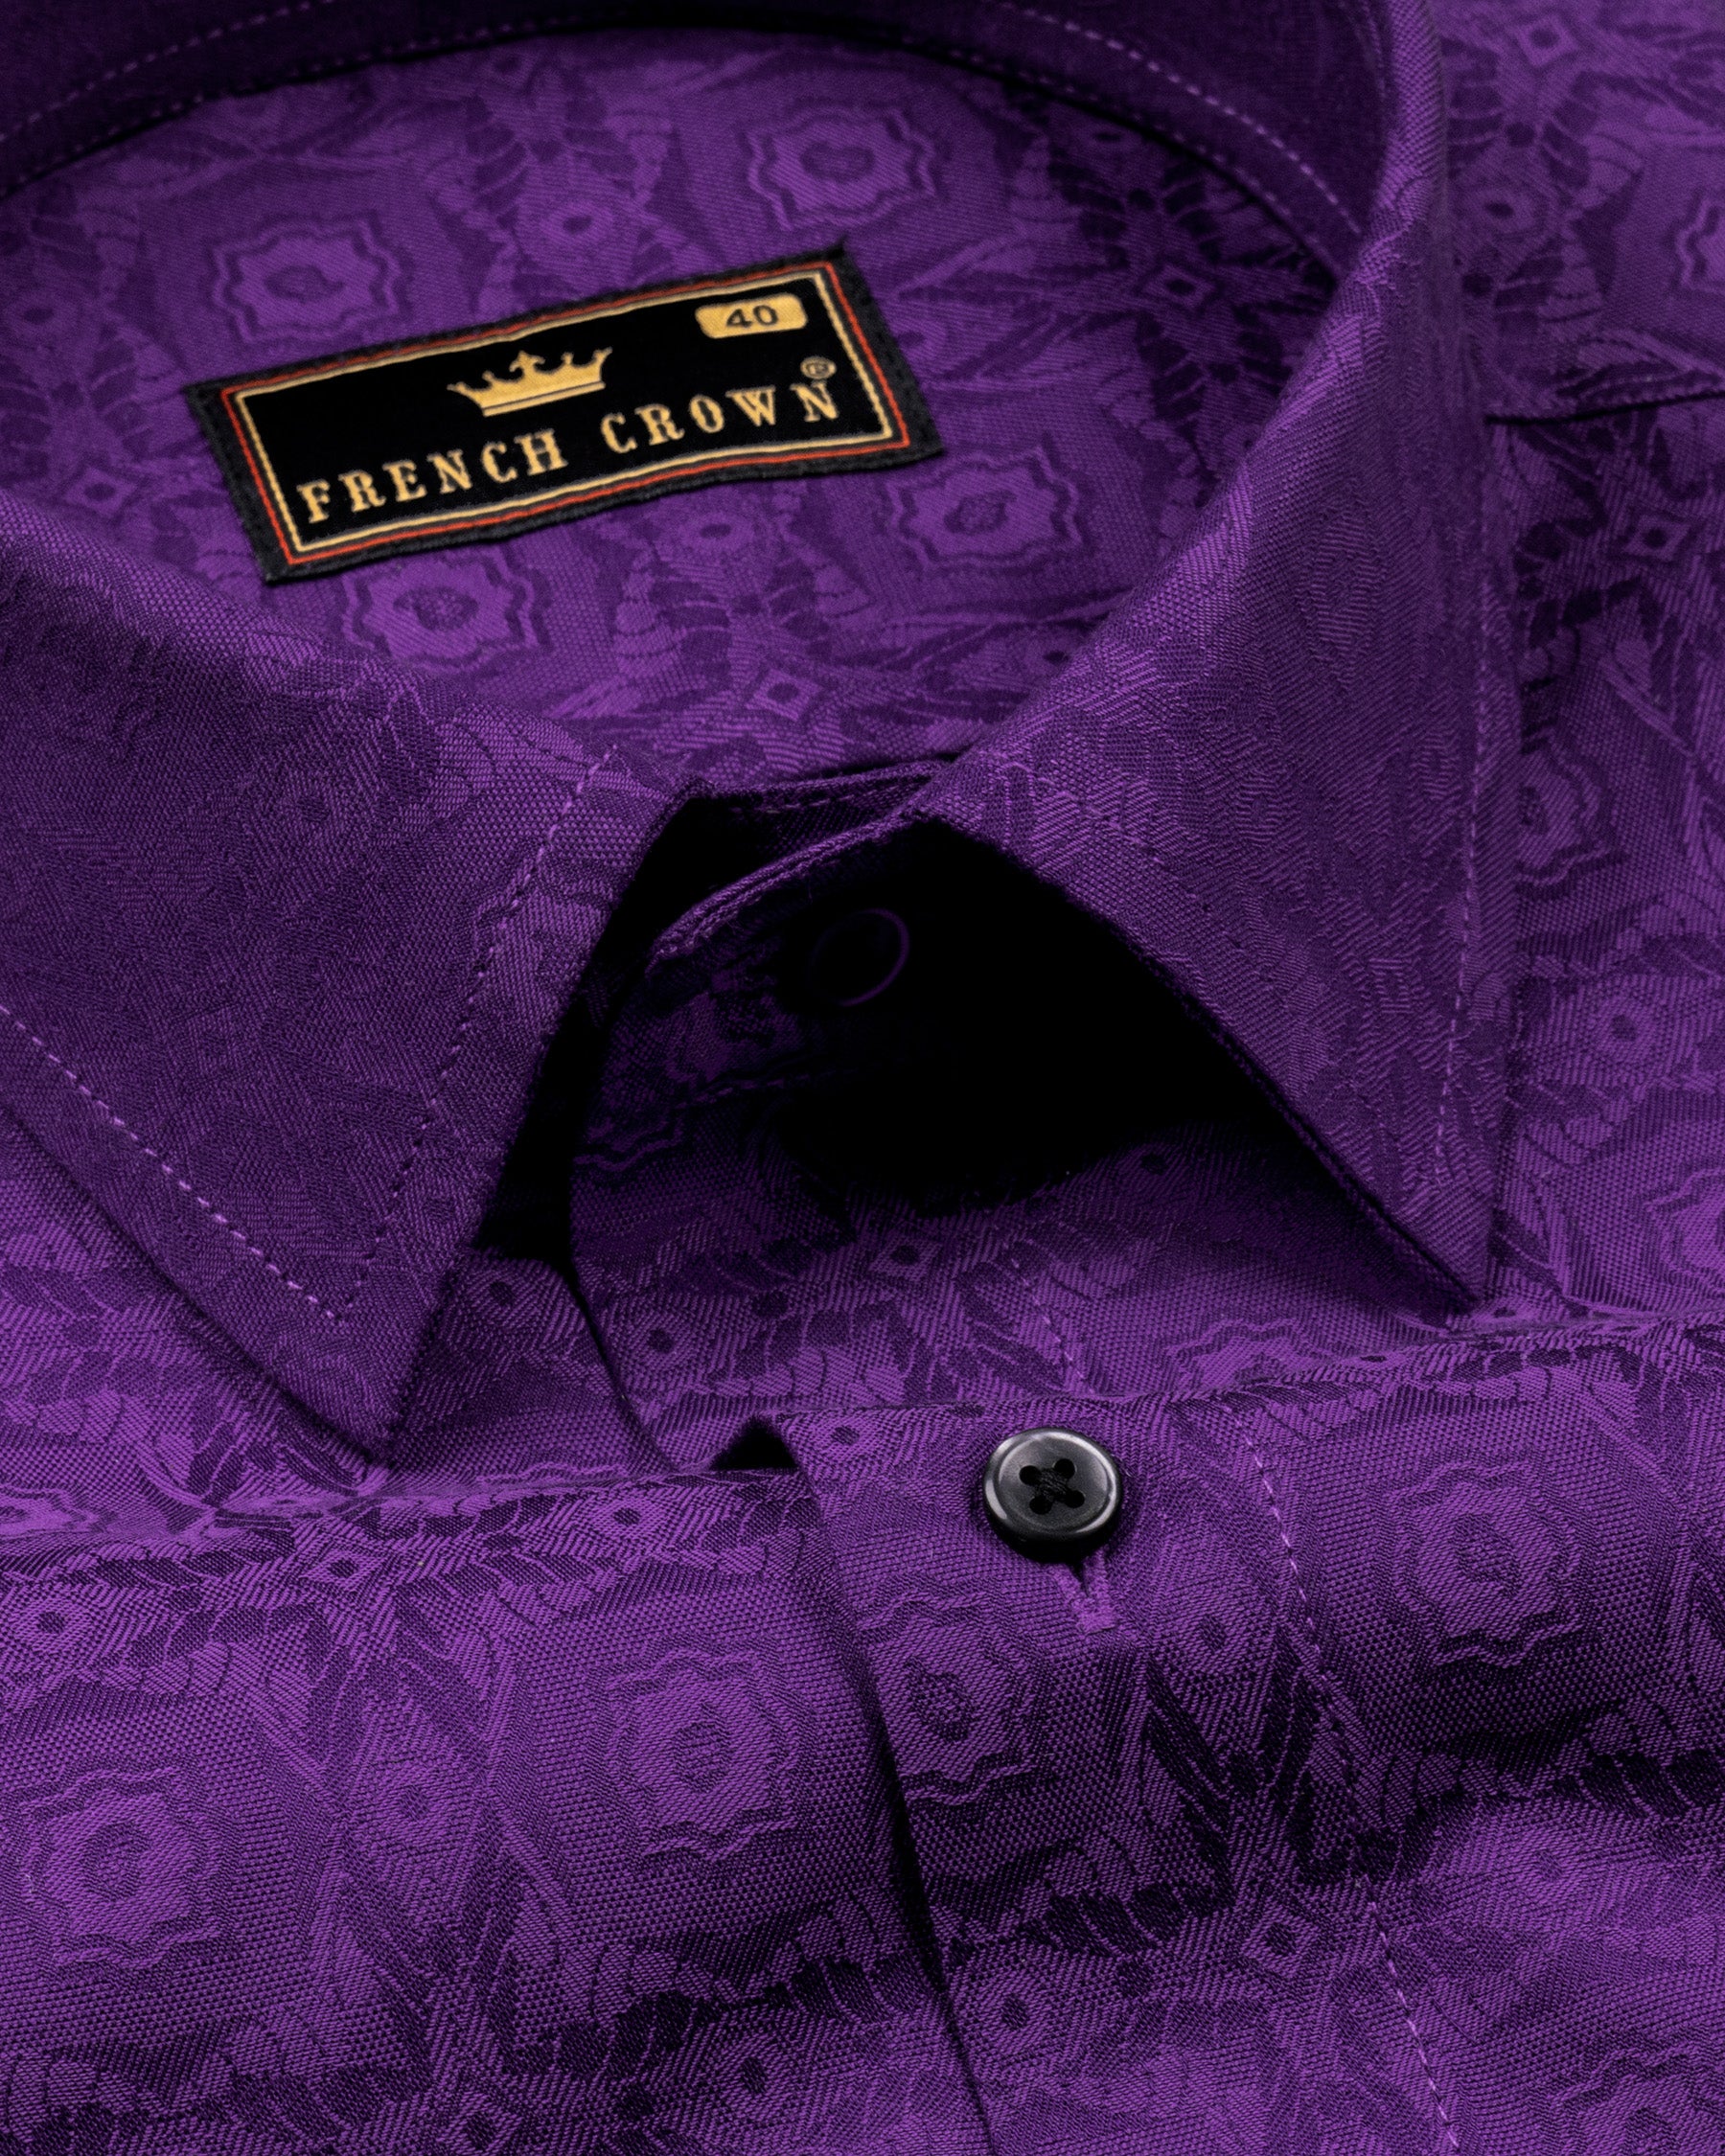 Vivid Violet Geometric Jacquard Textured Super soft Premium Giza Cotton Shirt 4687-BLK-38, 4687-BLK-H-38, 4687-BLK-H-39, 4687-BLK-40, 4687-BLK-H-40, 4687-BLK-H-46, 4687-BLK-48, 4687-BLK-H-50, 4687-BLK-52, 4687-BLK-H-48, 4687-BLK-50, 4687-BLK-H-52, 4687-BLK-39, 4687-BLK-42, 4687-BLK-H-42, 4687-BLK-44, 4687-BLK-H-44, 4687-BLK-46